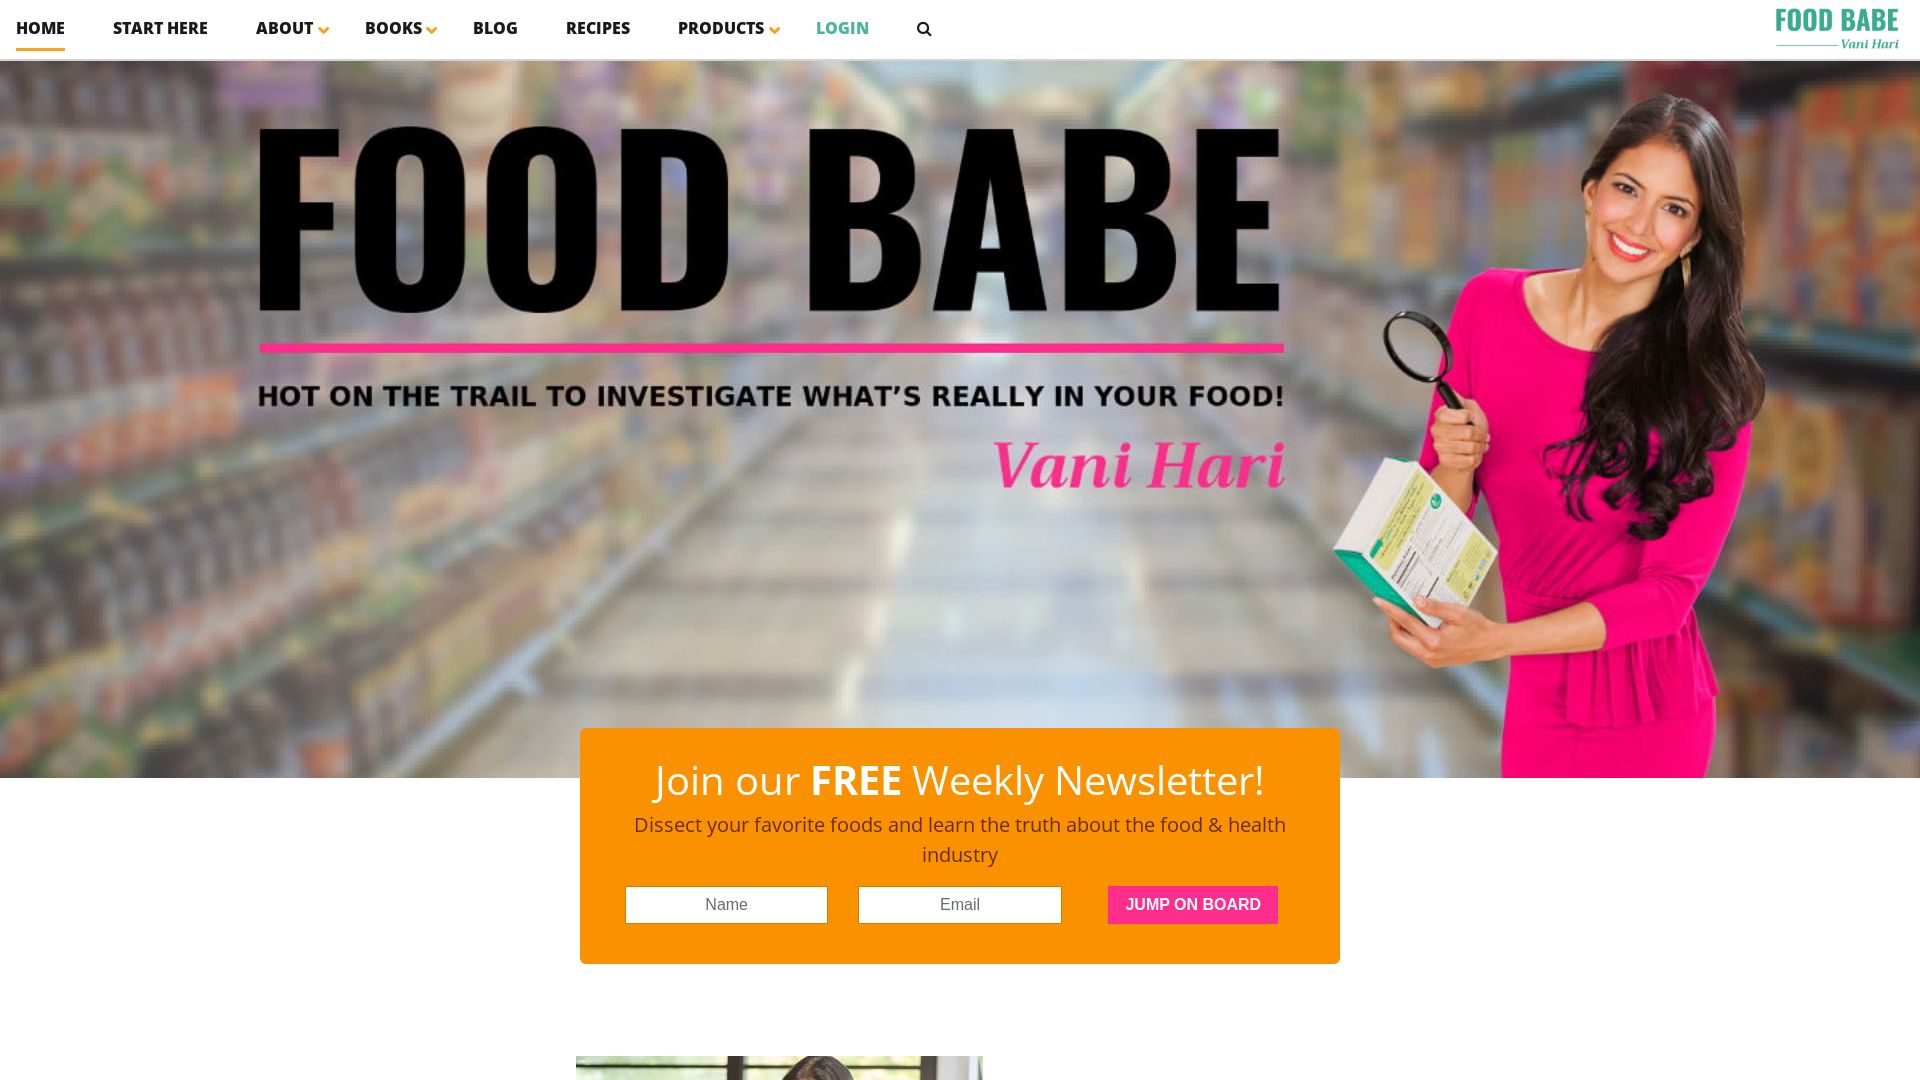 État du site web foodbabe.com est   EN LIGNE